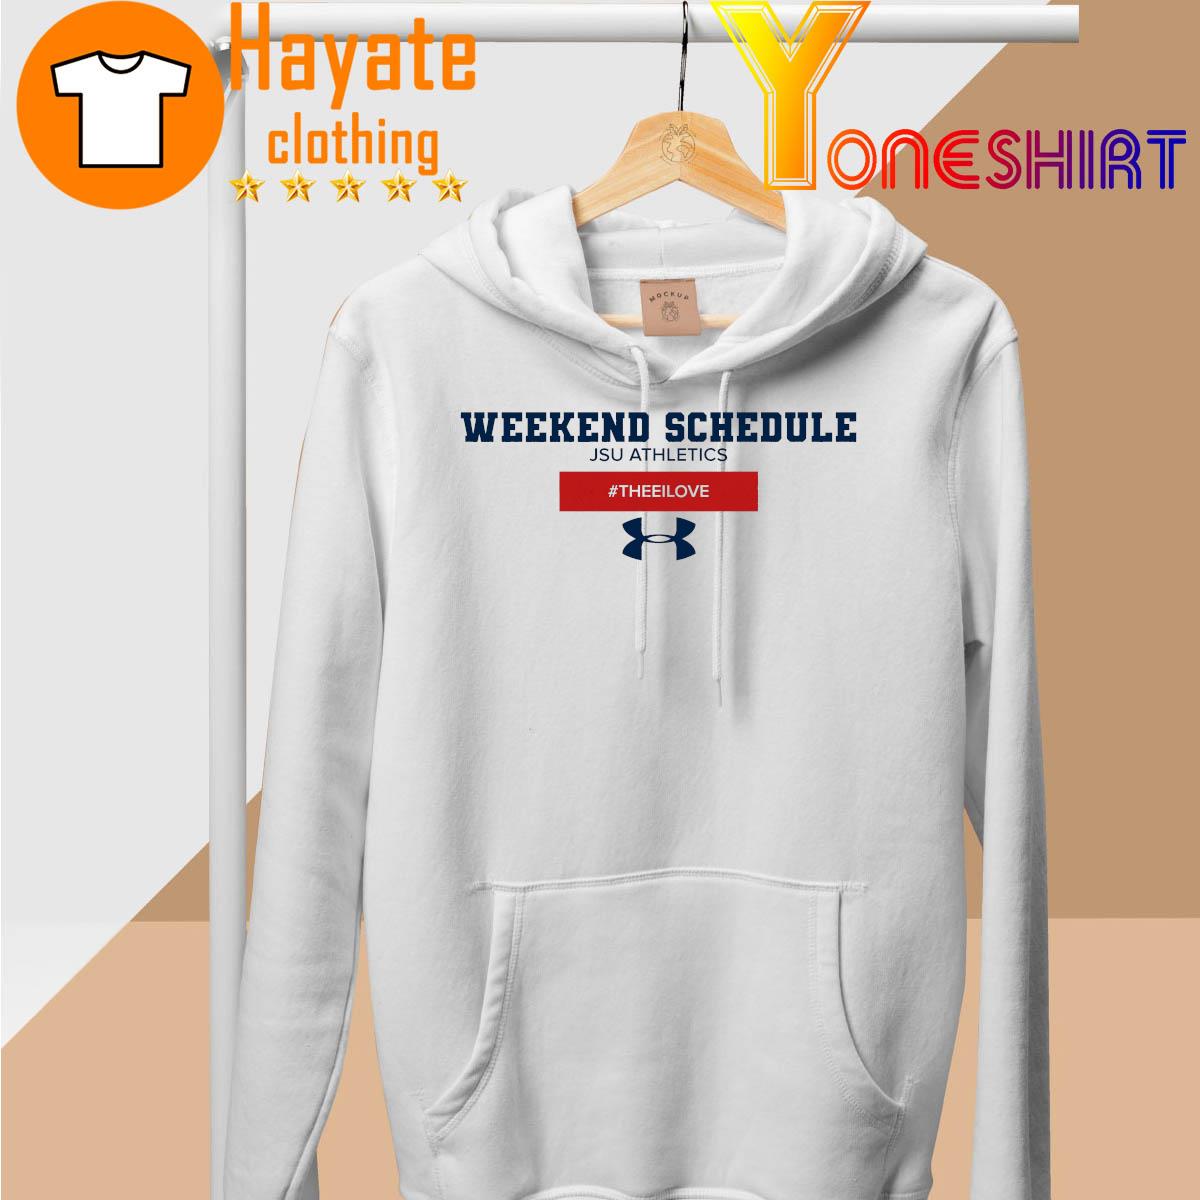 Weekend Schedule JSU Athletics hoodie